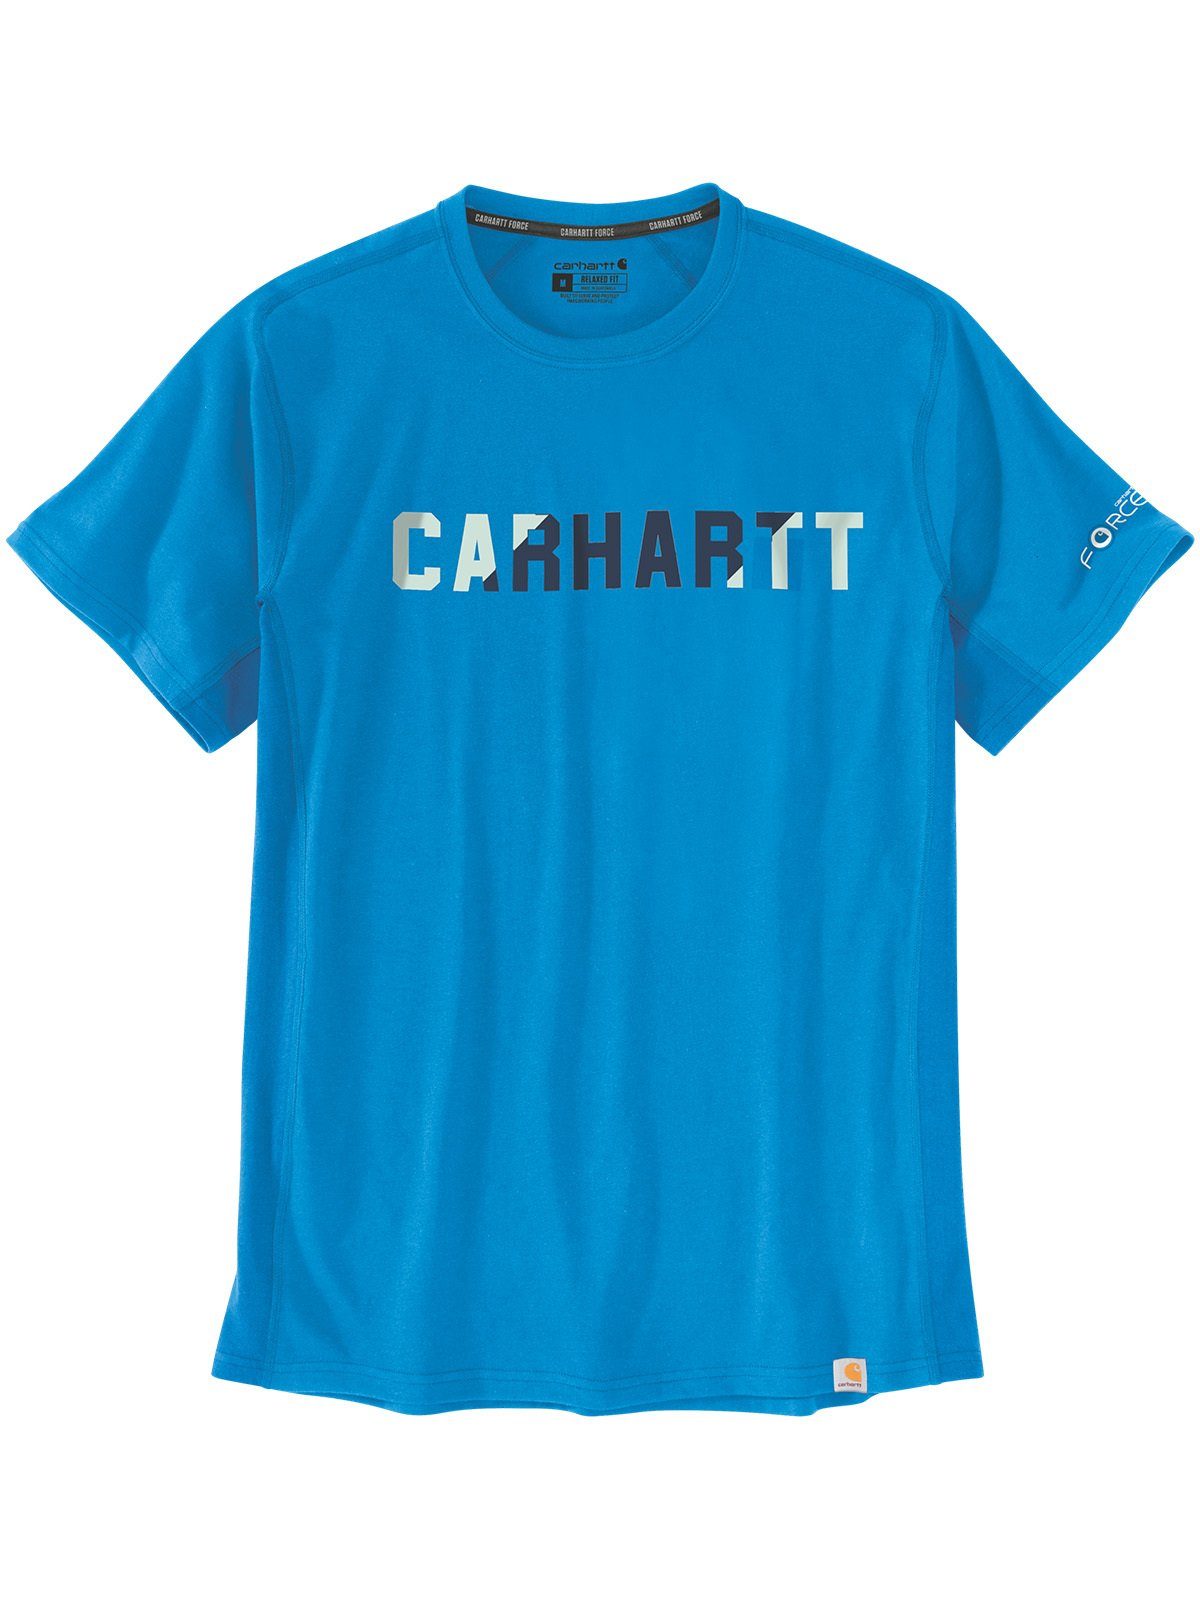 T-Shirt Carhartt hellblau T-Shirt blue Logo Carhartt azure